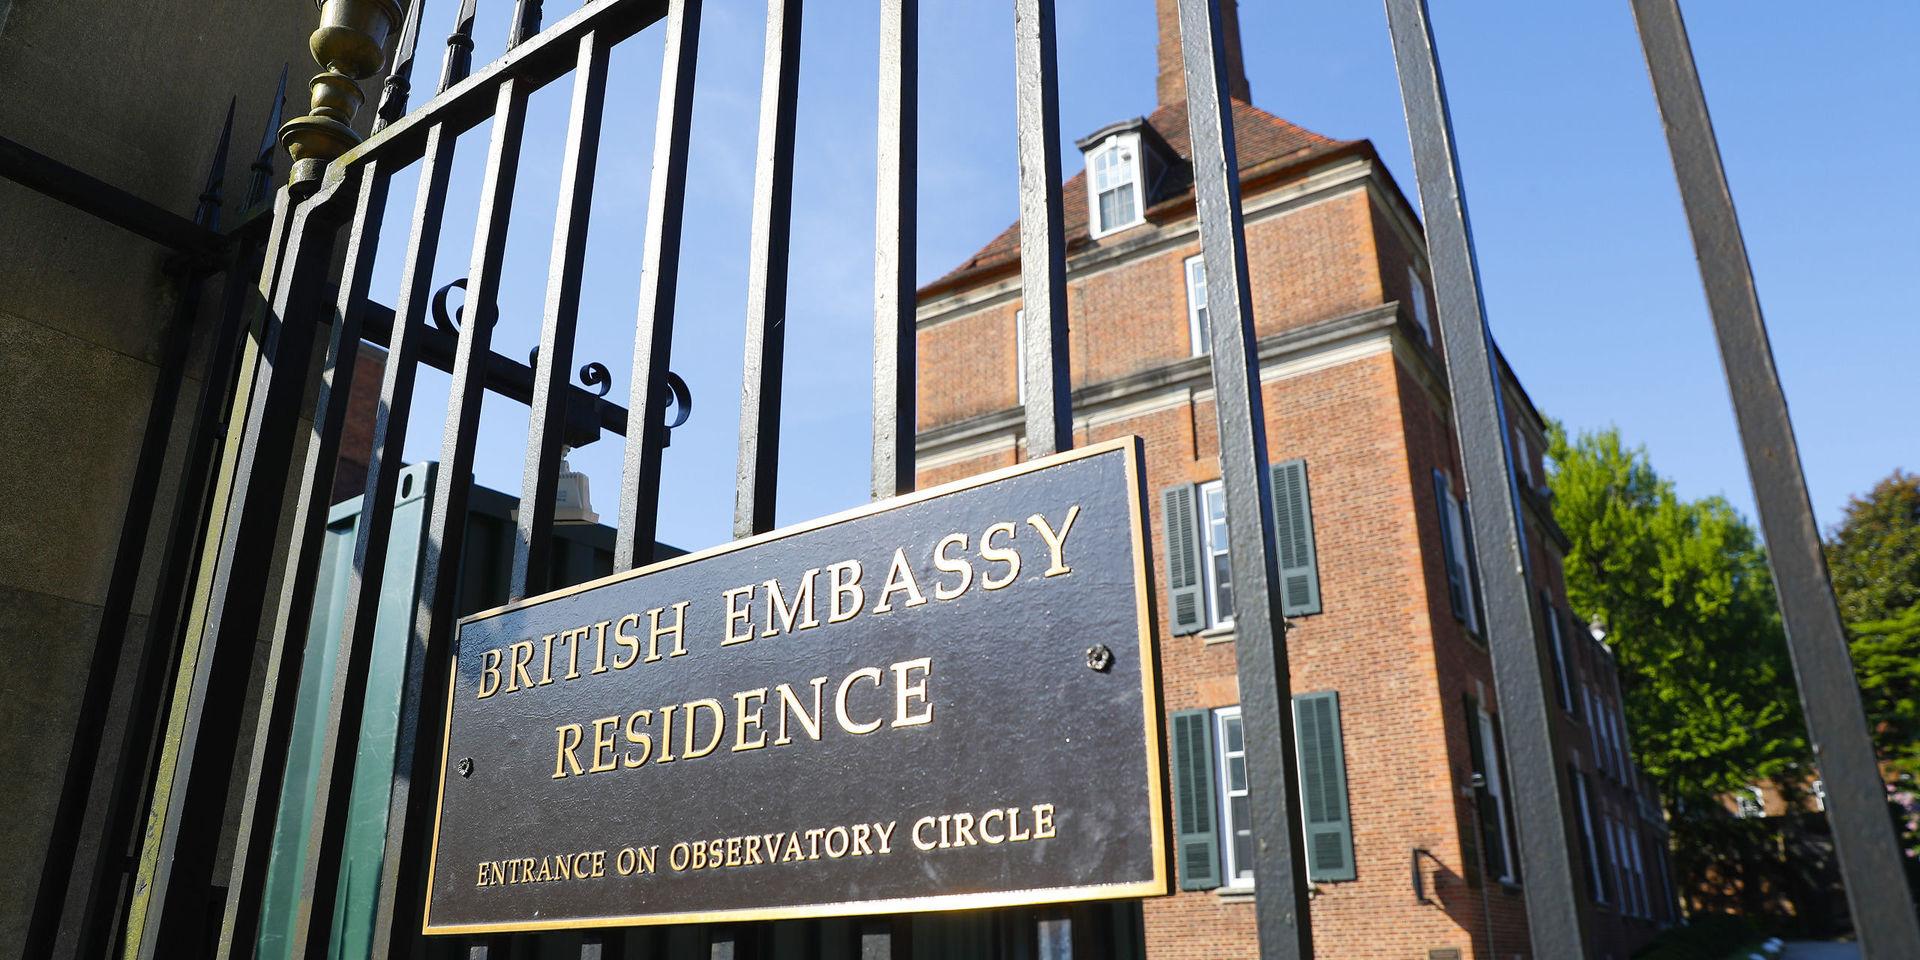 Brittisk polis utreder läckan av hemliga anteckningar från landets ambassad i USA. Arkivbild av ambassadbyggnaden i Washington DC.